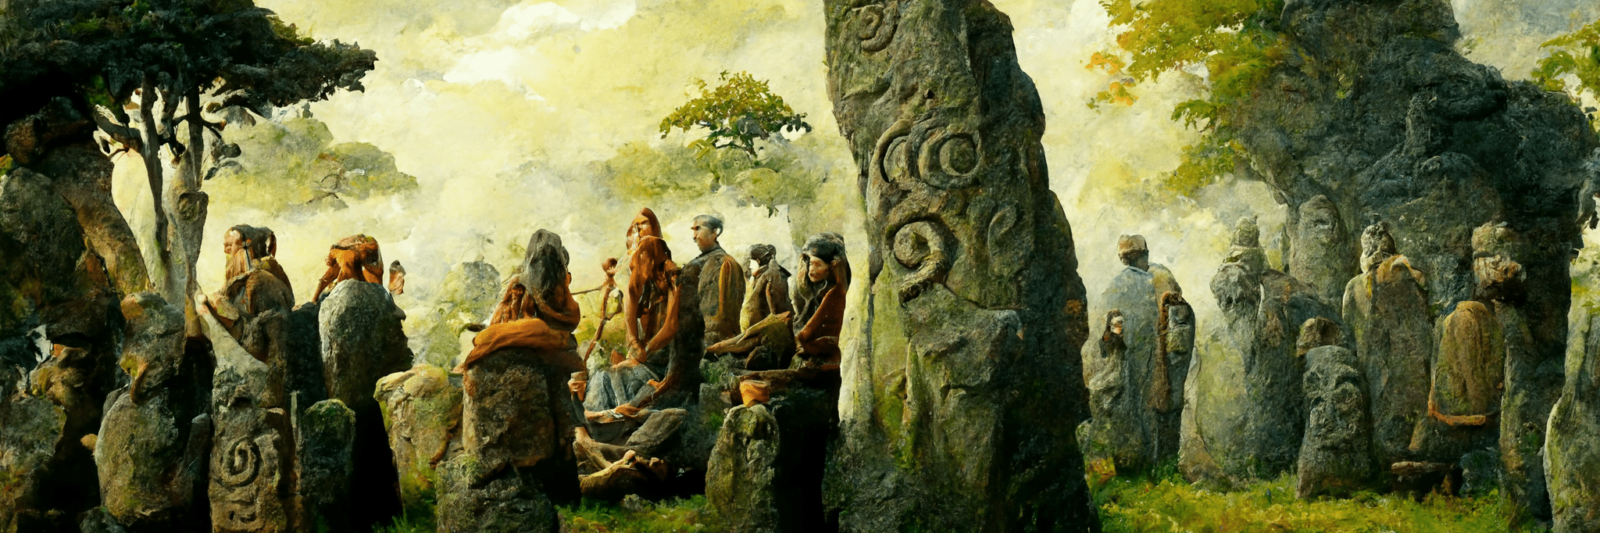 histoire druiduc scene